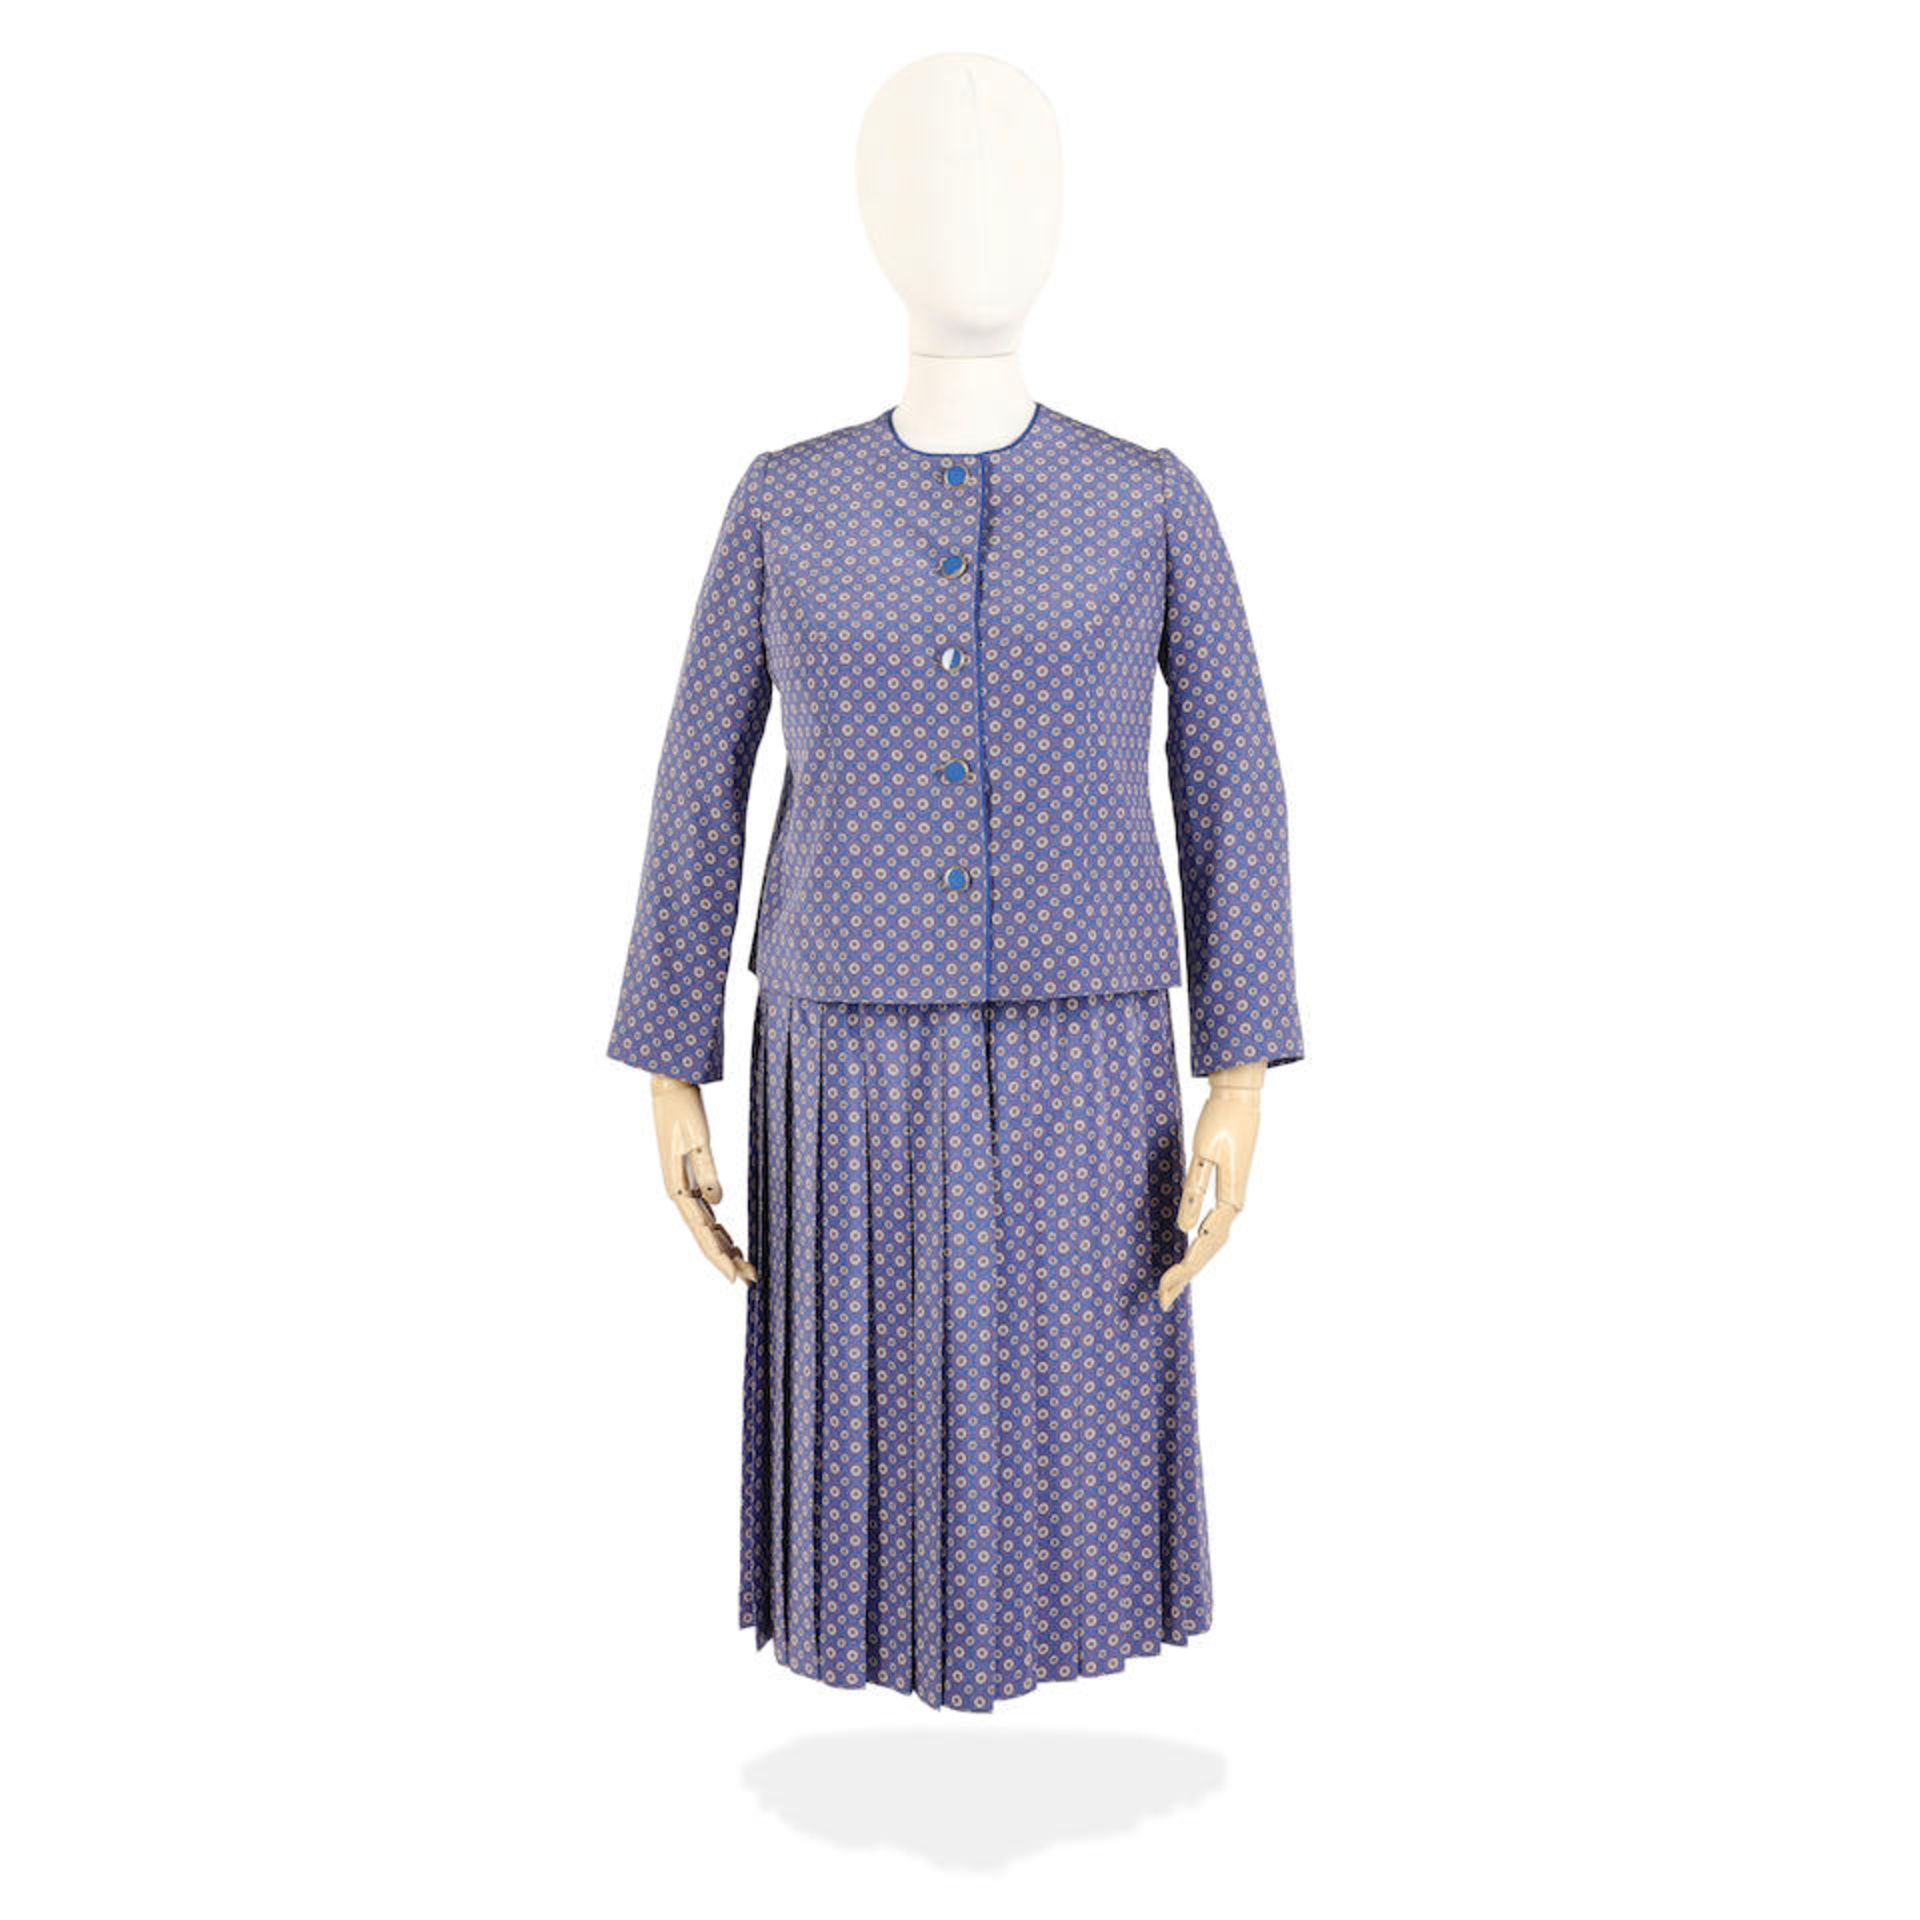 Imelda Staunton (as the Queen): A daisy-print skirt suit Season 6, Episode 7, 'Alma Mater'